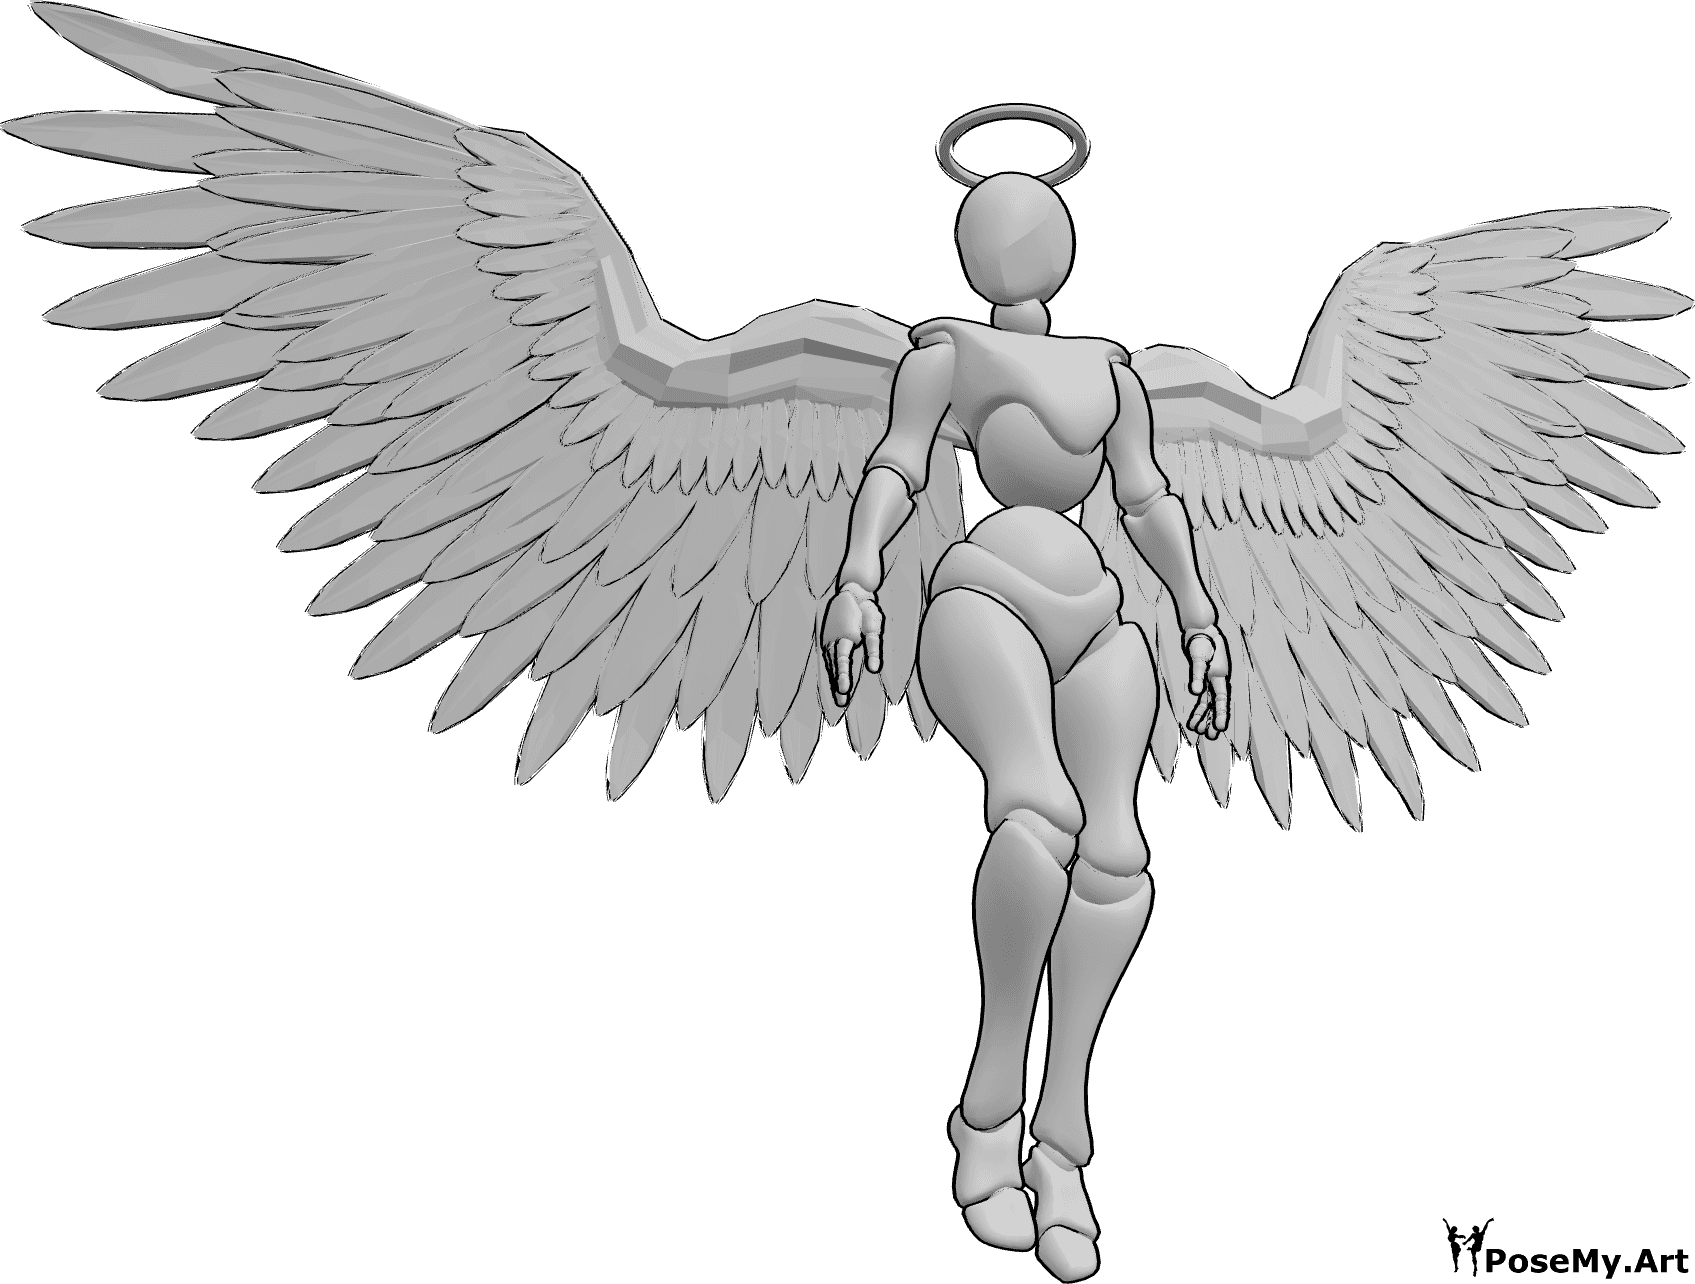 Referencia de poses- Postura femenina con alas de ángel - Mujer con alas de ángel y halo flotando en el aire y mirando a la derecha